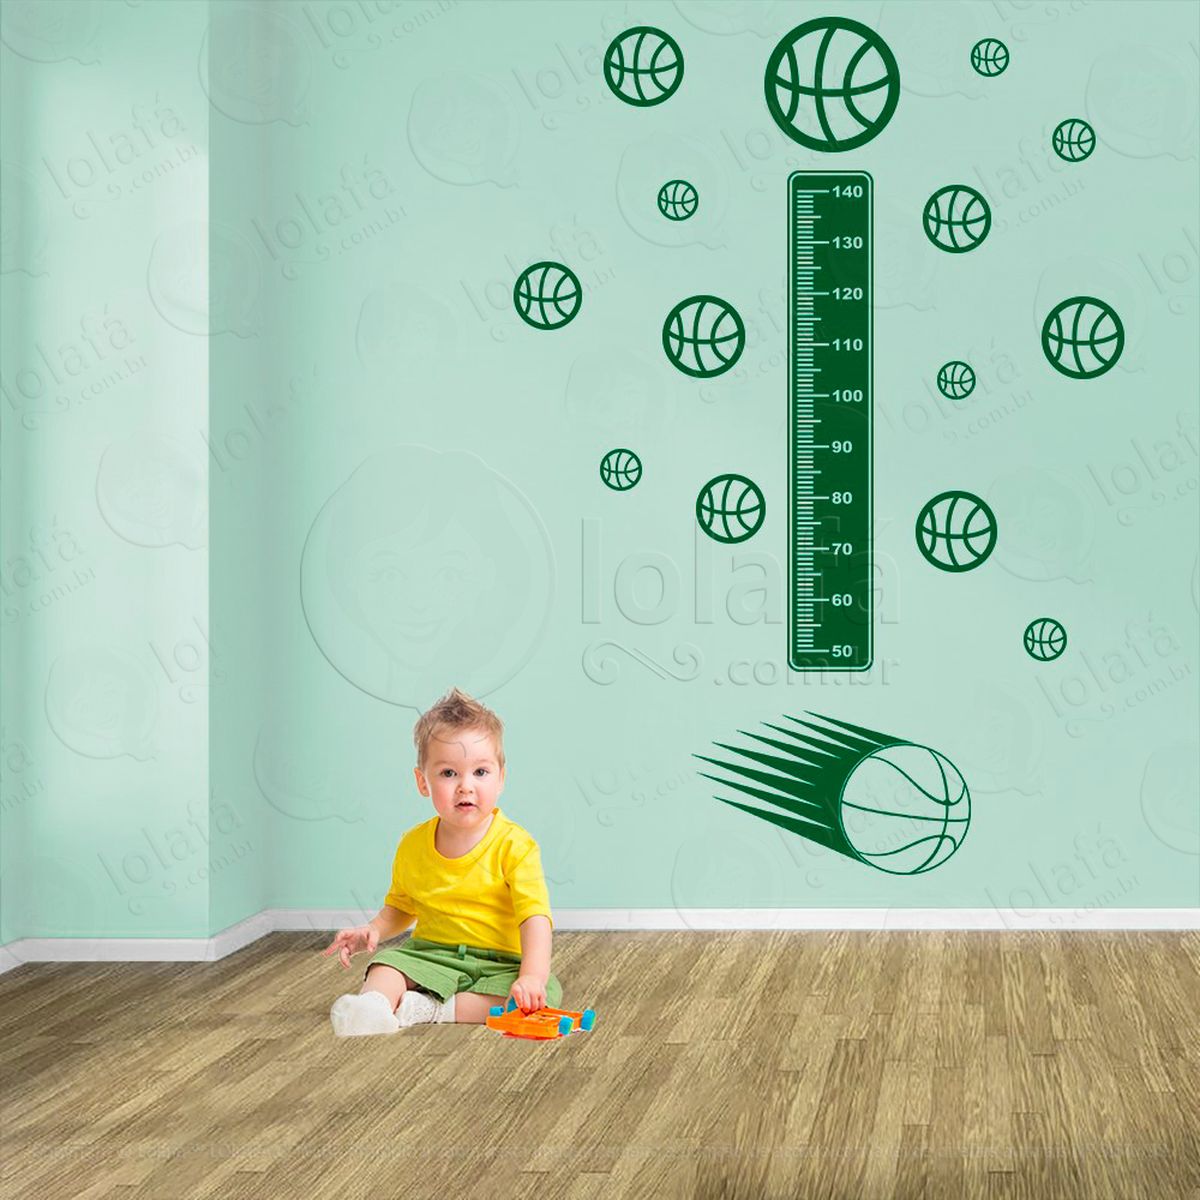 basquetebol e bolas de basquete adesivo régua de crescimento infantil, medidor de altura para quarto, porta e parede - mod:277